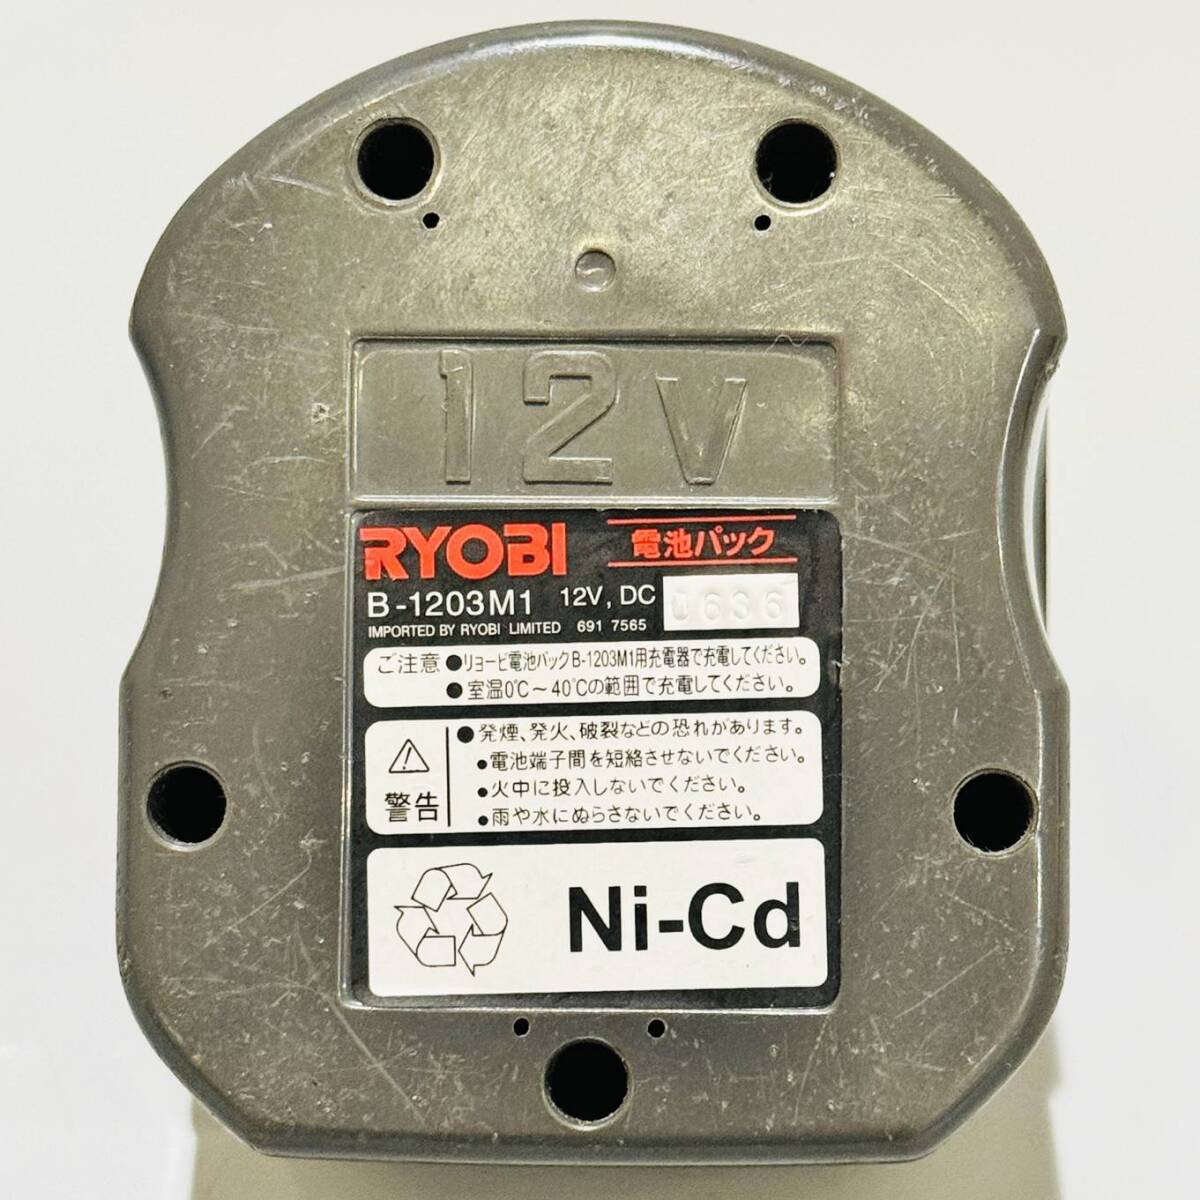 甲HK9978 クリーニング済 動作未確認 現状品 リョービ RYOBI 充電式ドライバドリル BD-122 B-1203M1 12V 電動工具 インパクトの画像8